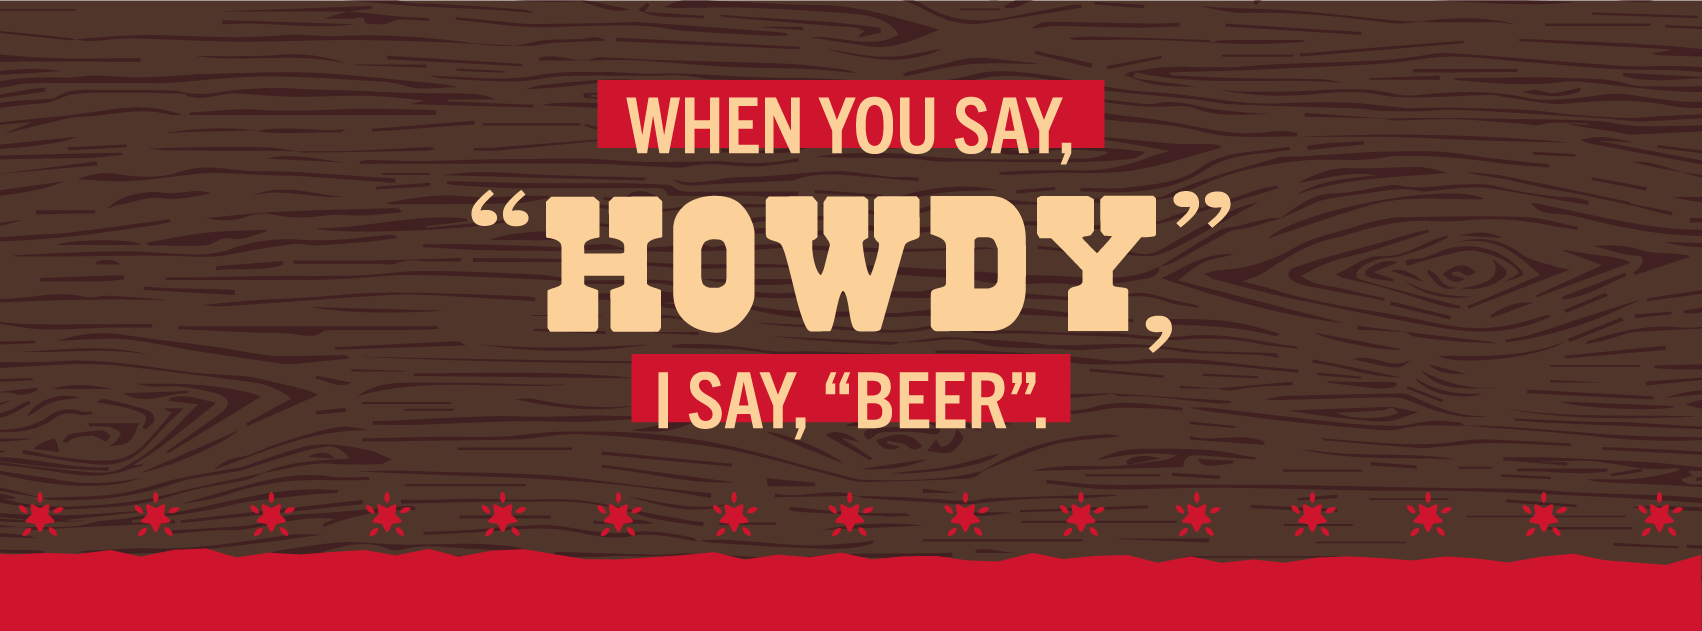 Howdy Beer